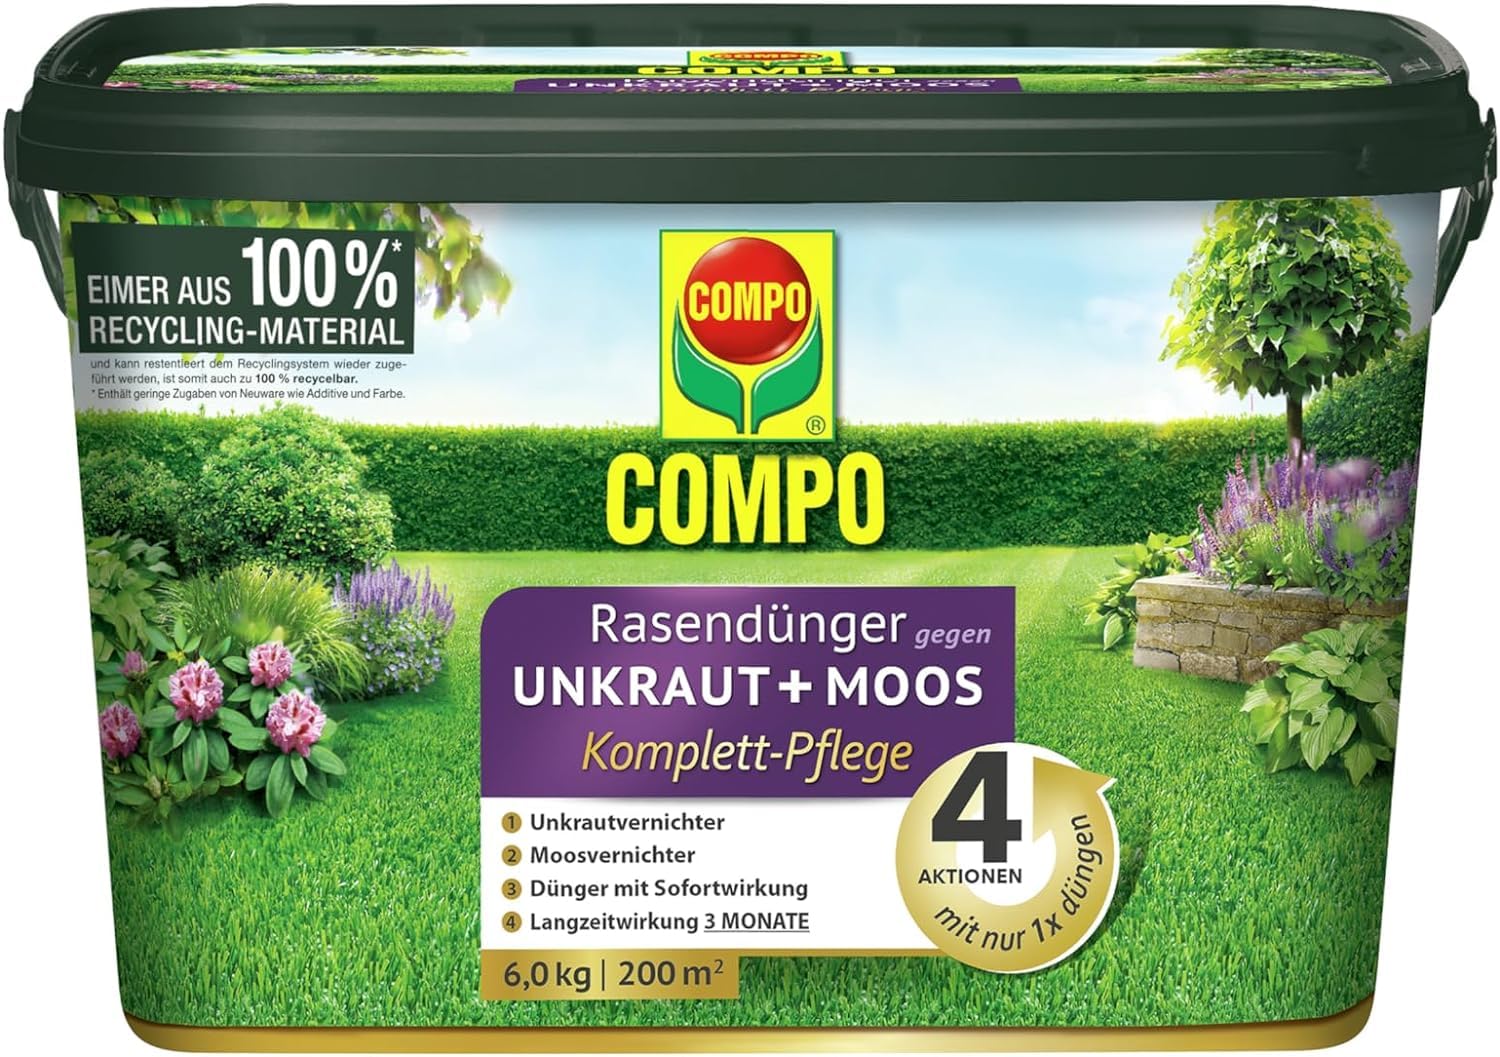 COMPO Rasendünger gegen Moos und Unkraut - 3 Monate Langzeitwirkung - 6 kg / 200m²